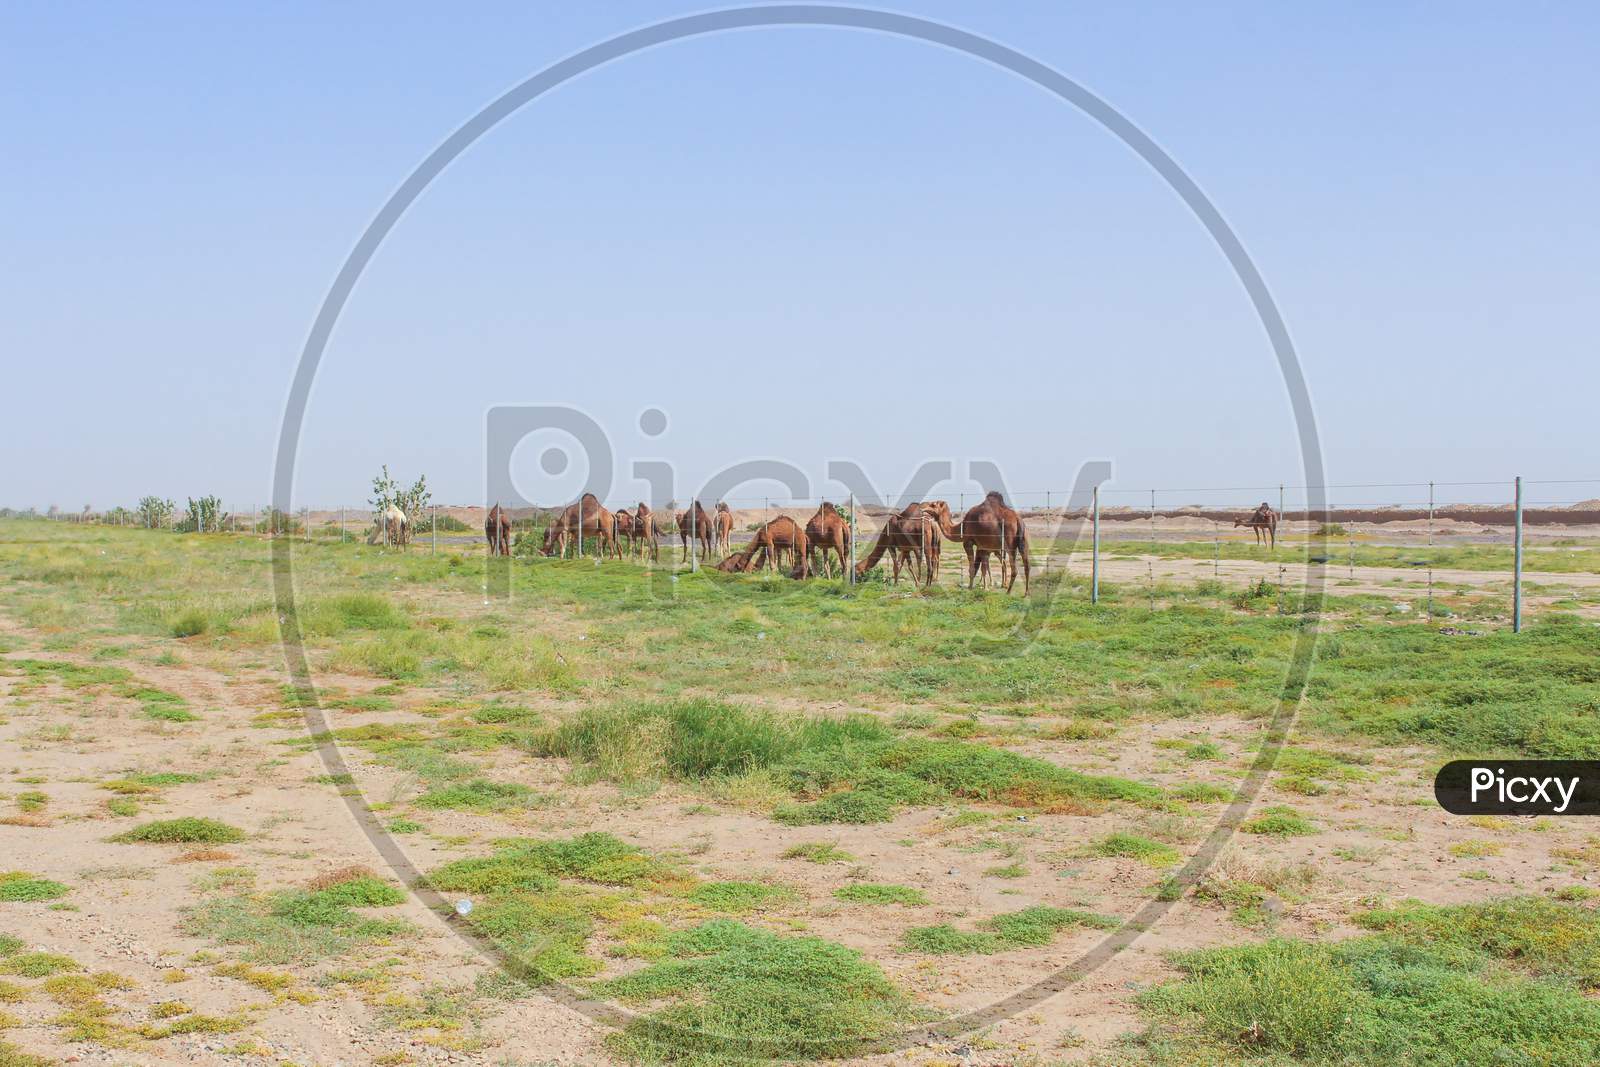 camels feeding in desert